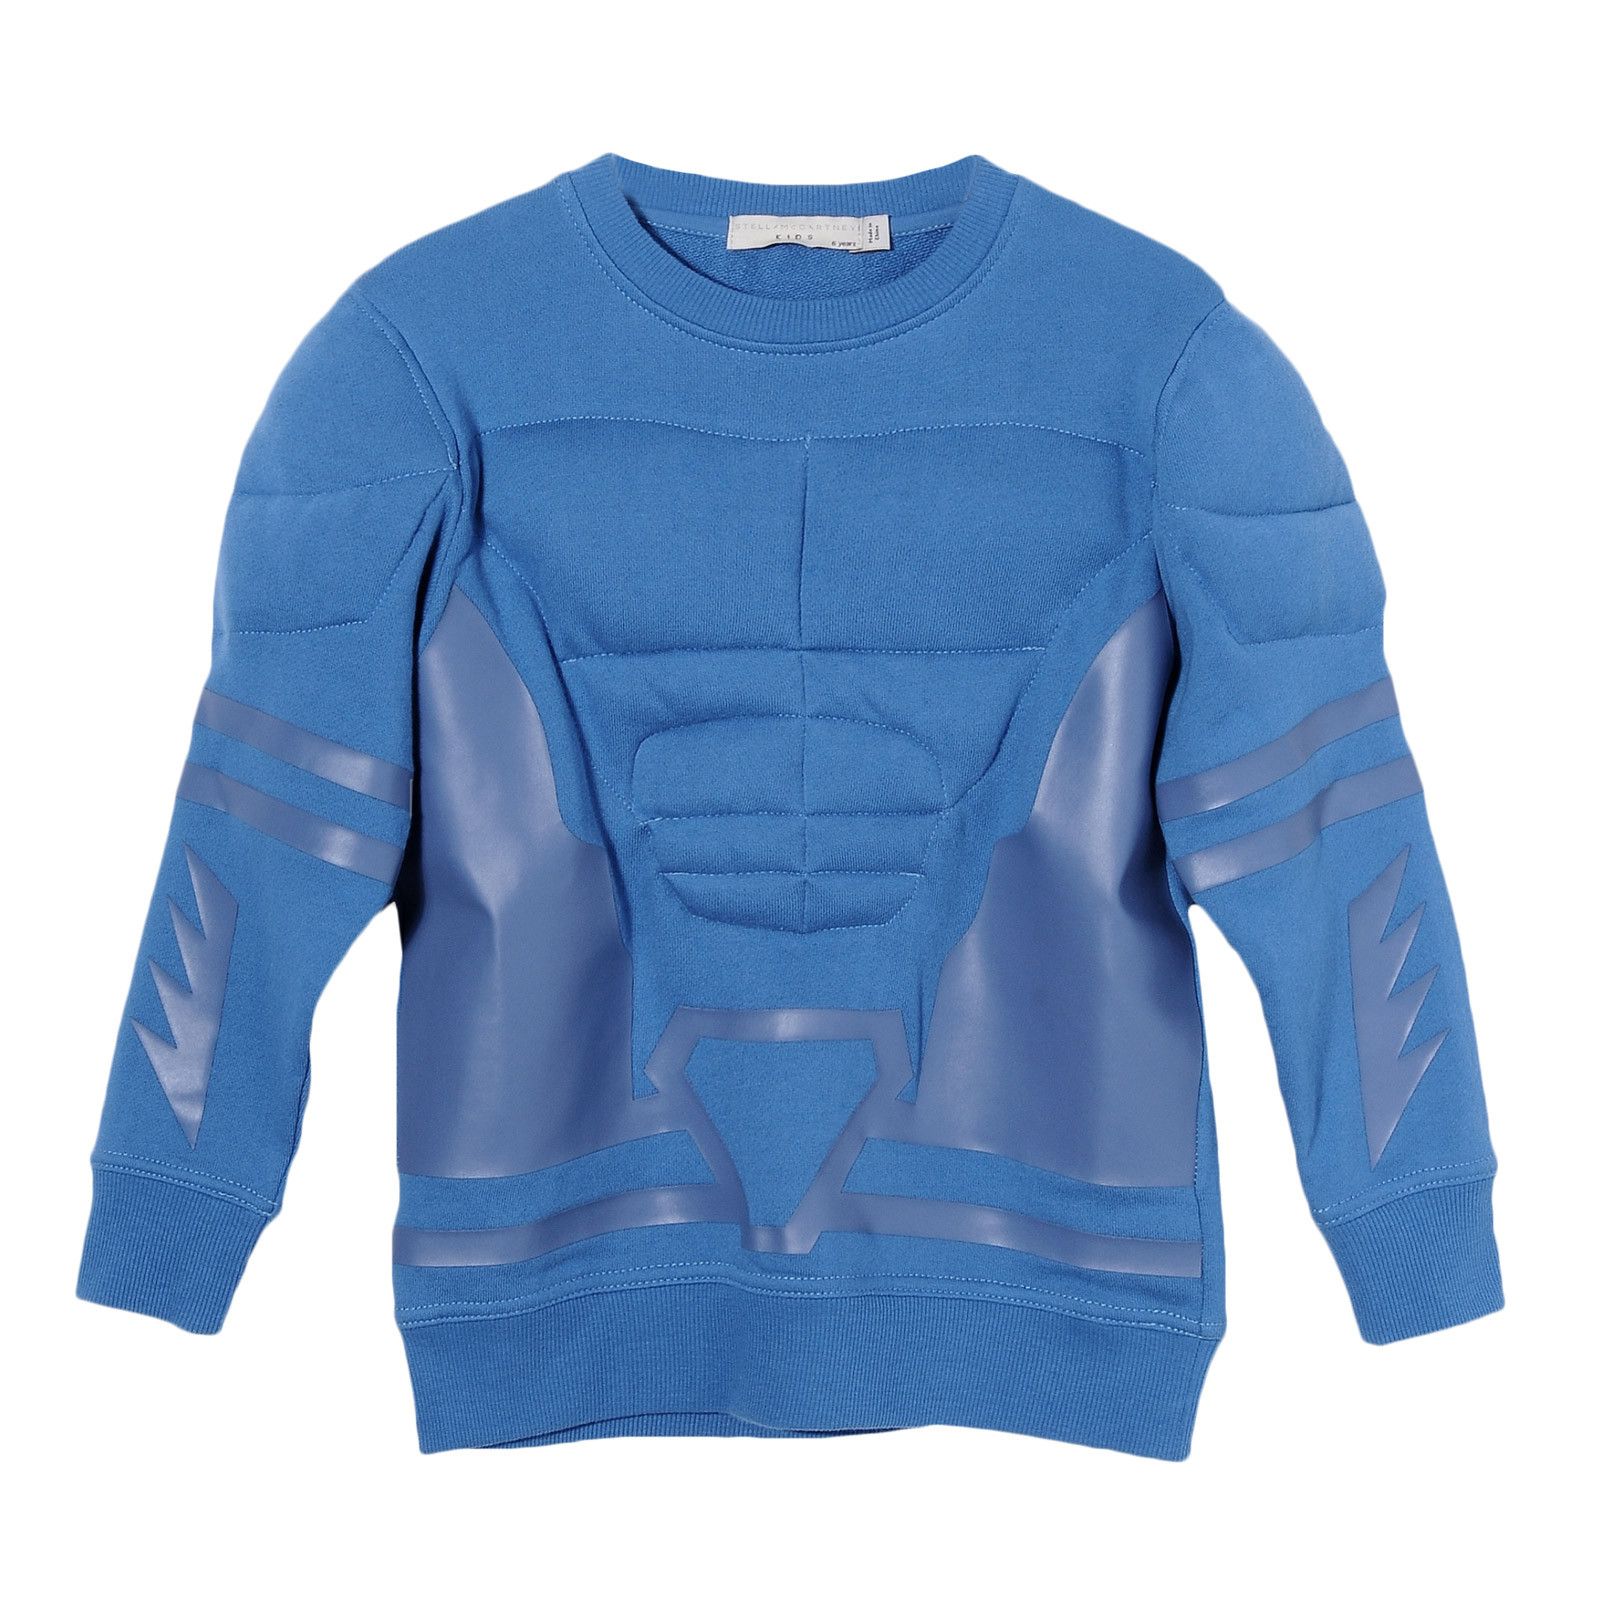 Boys Light Blue Cotton Patch Trims Sweatshirt - CÉMAROSE | Children's Fashion Store